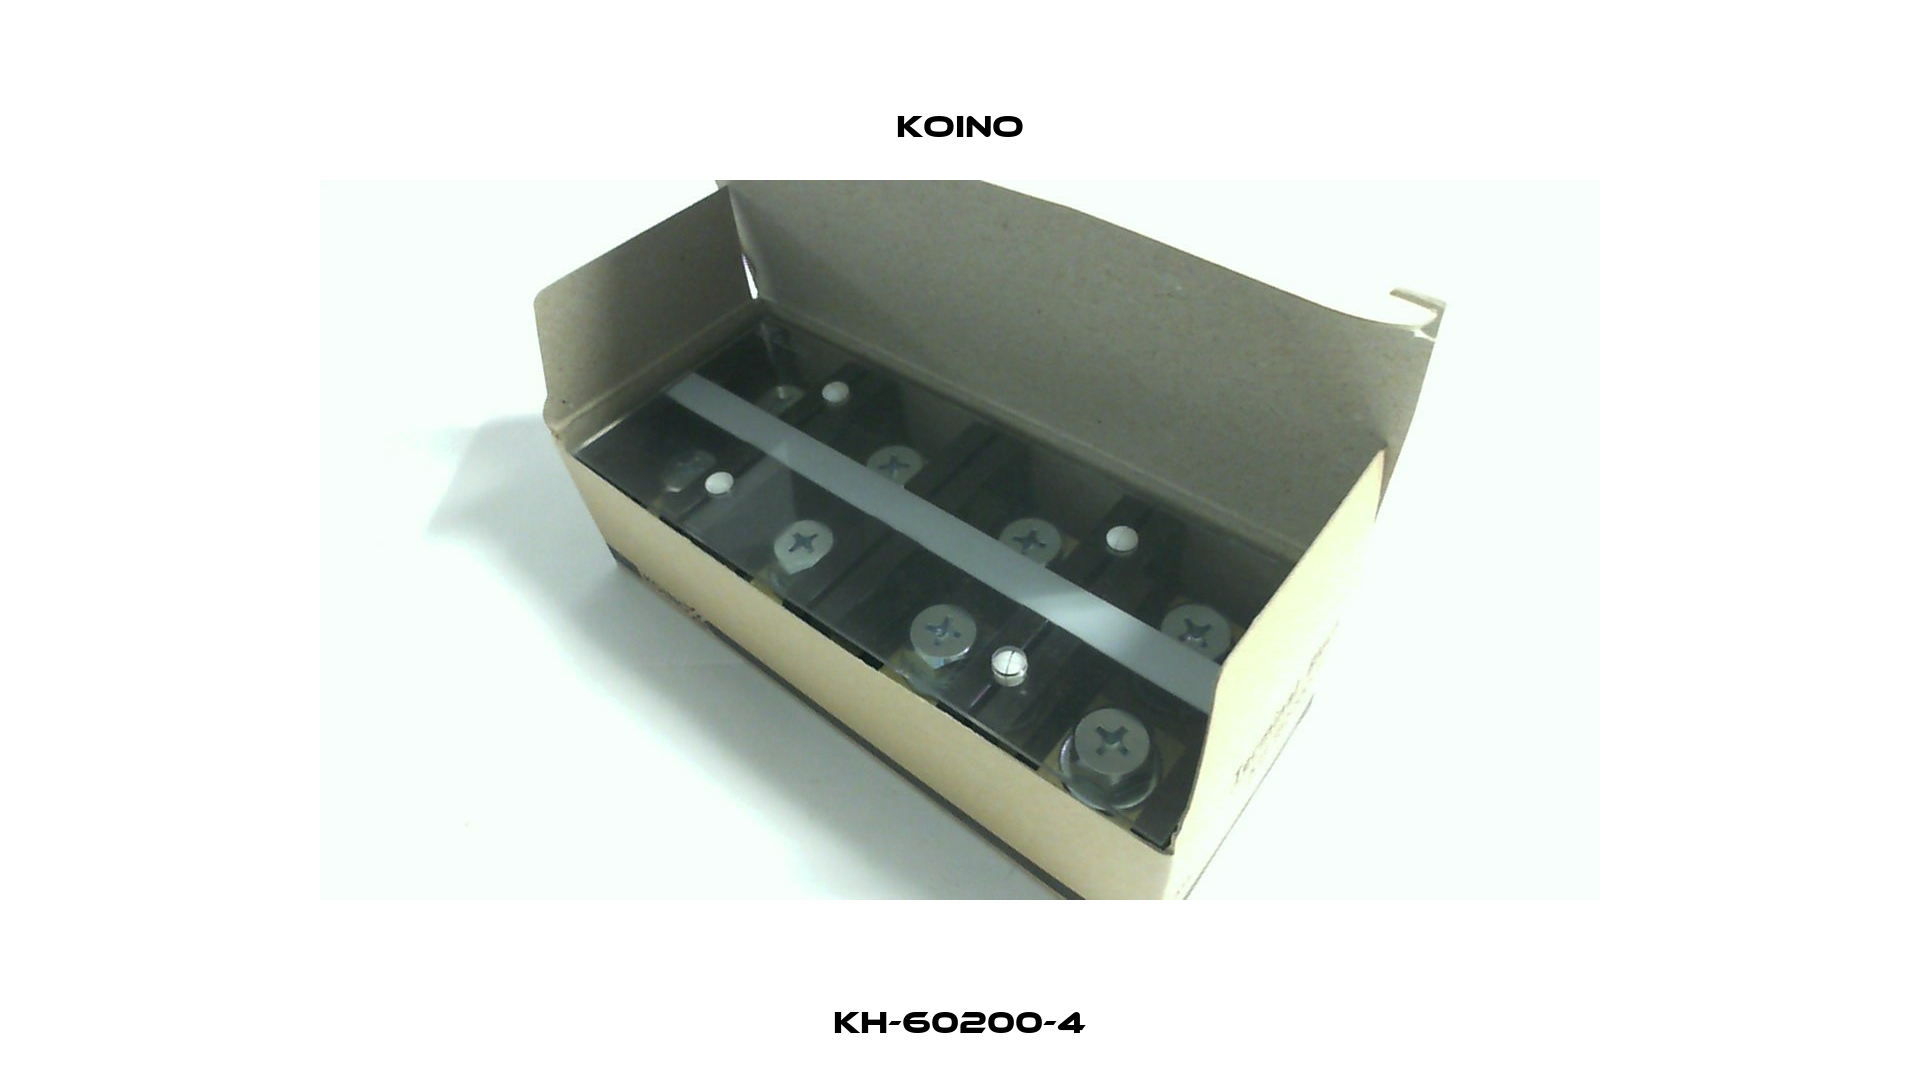 KH-60200-4 Koino